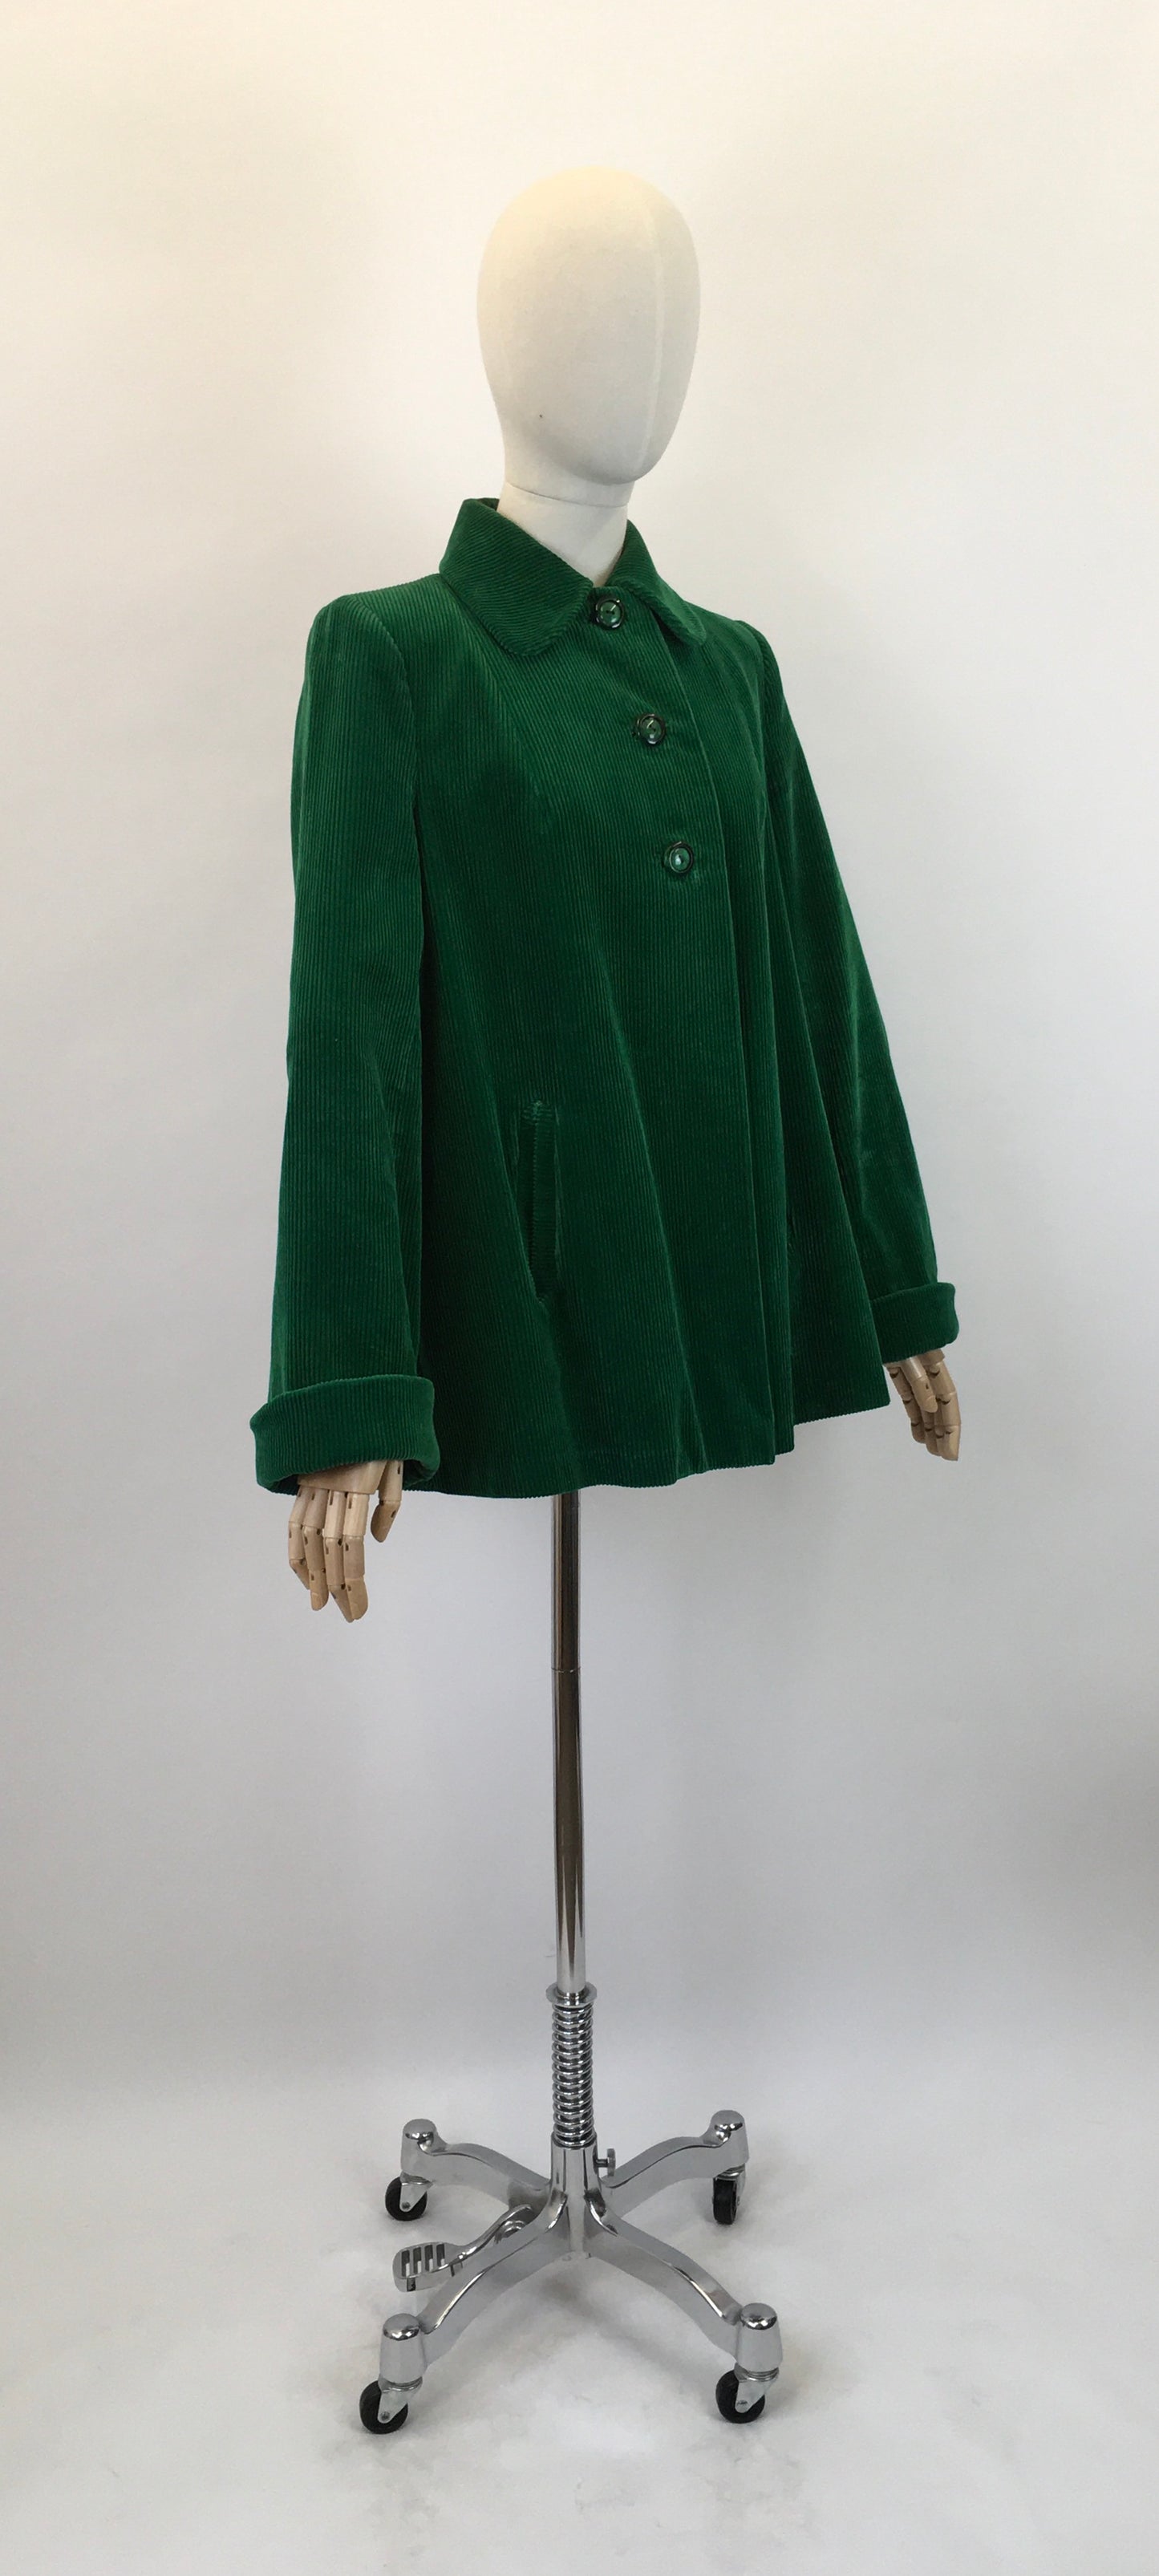 Original 1940's Needlepoint Corduroy Swing Coat - In An Exquisite Emerald Green